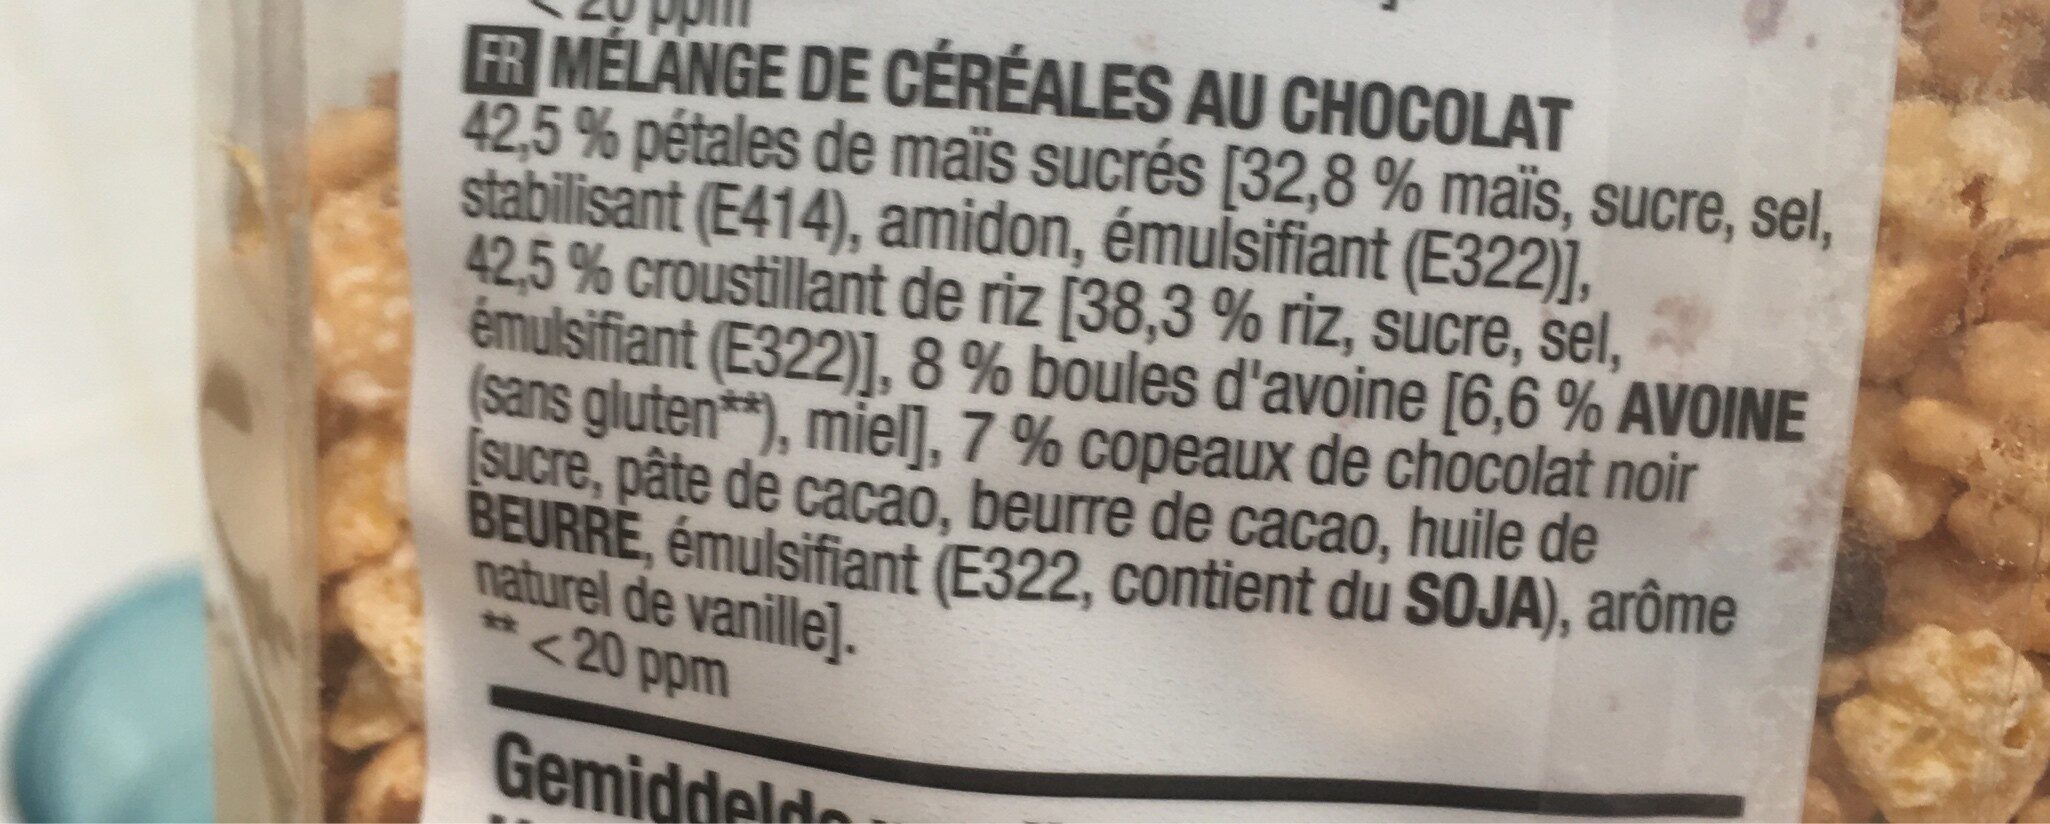 Céréales au chocolat - Ingrédients